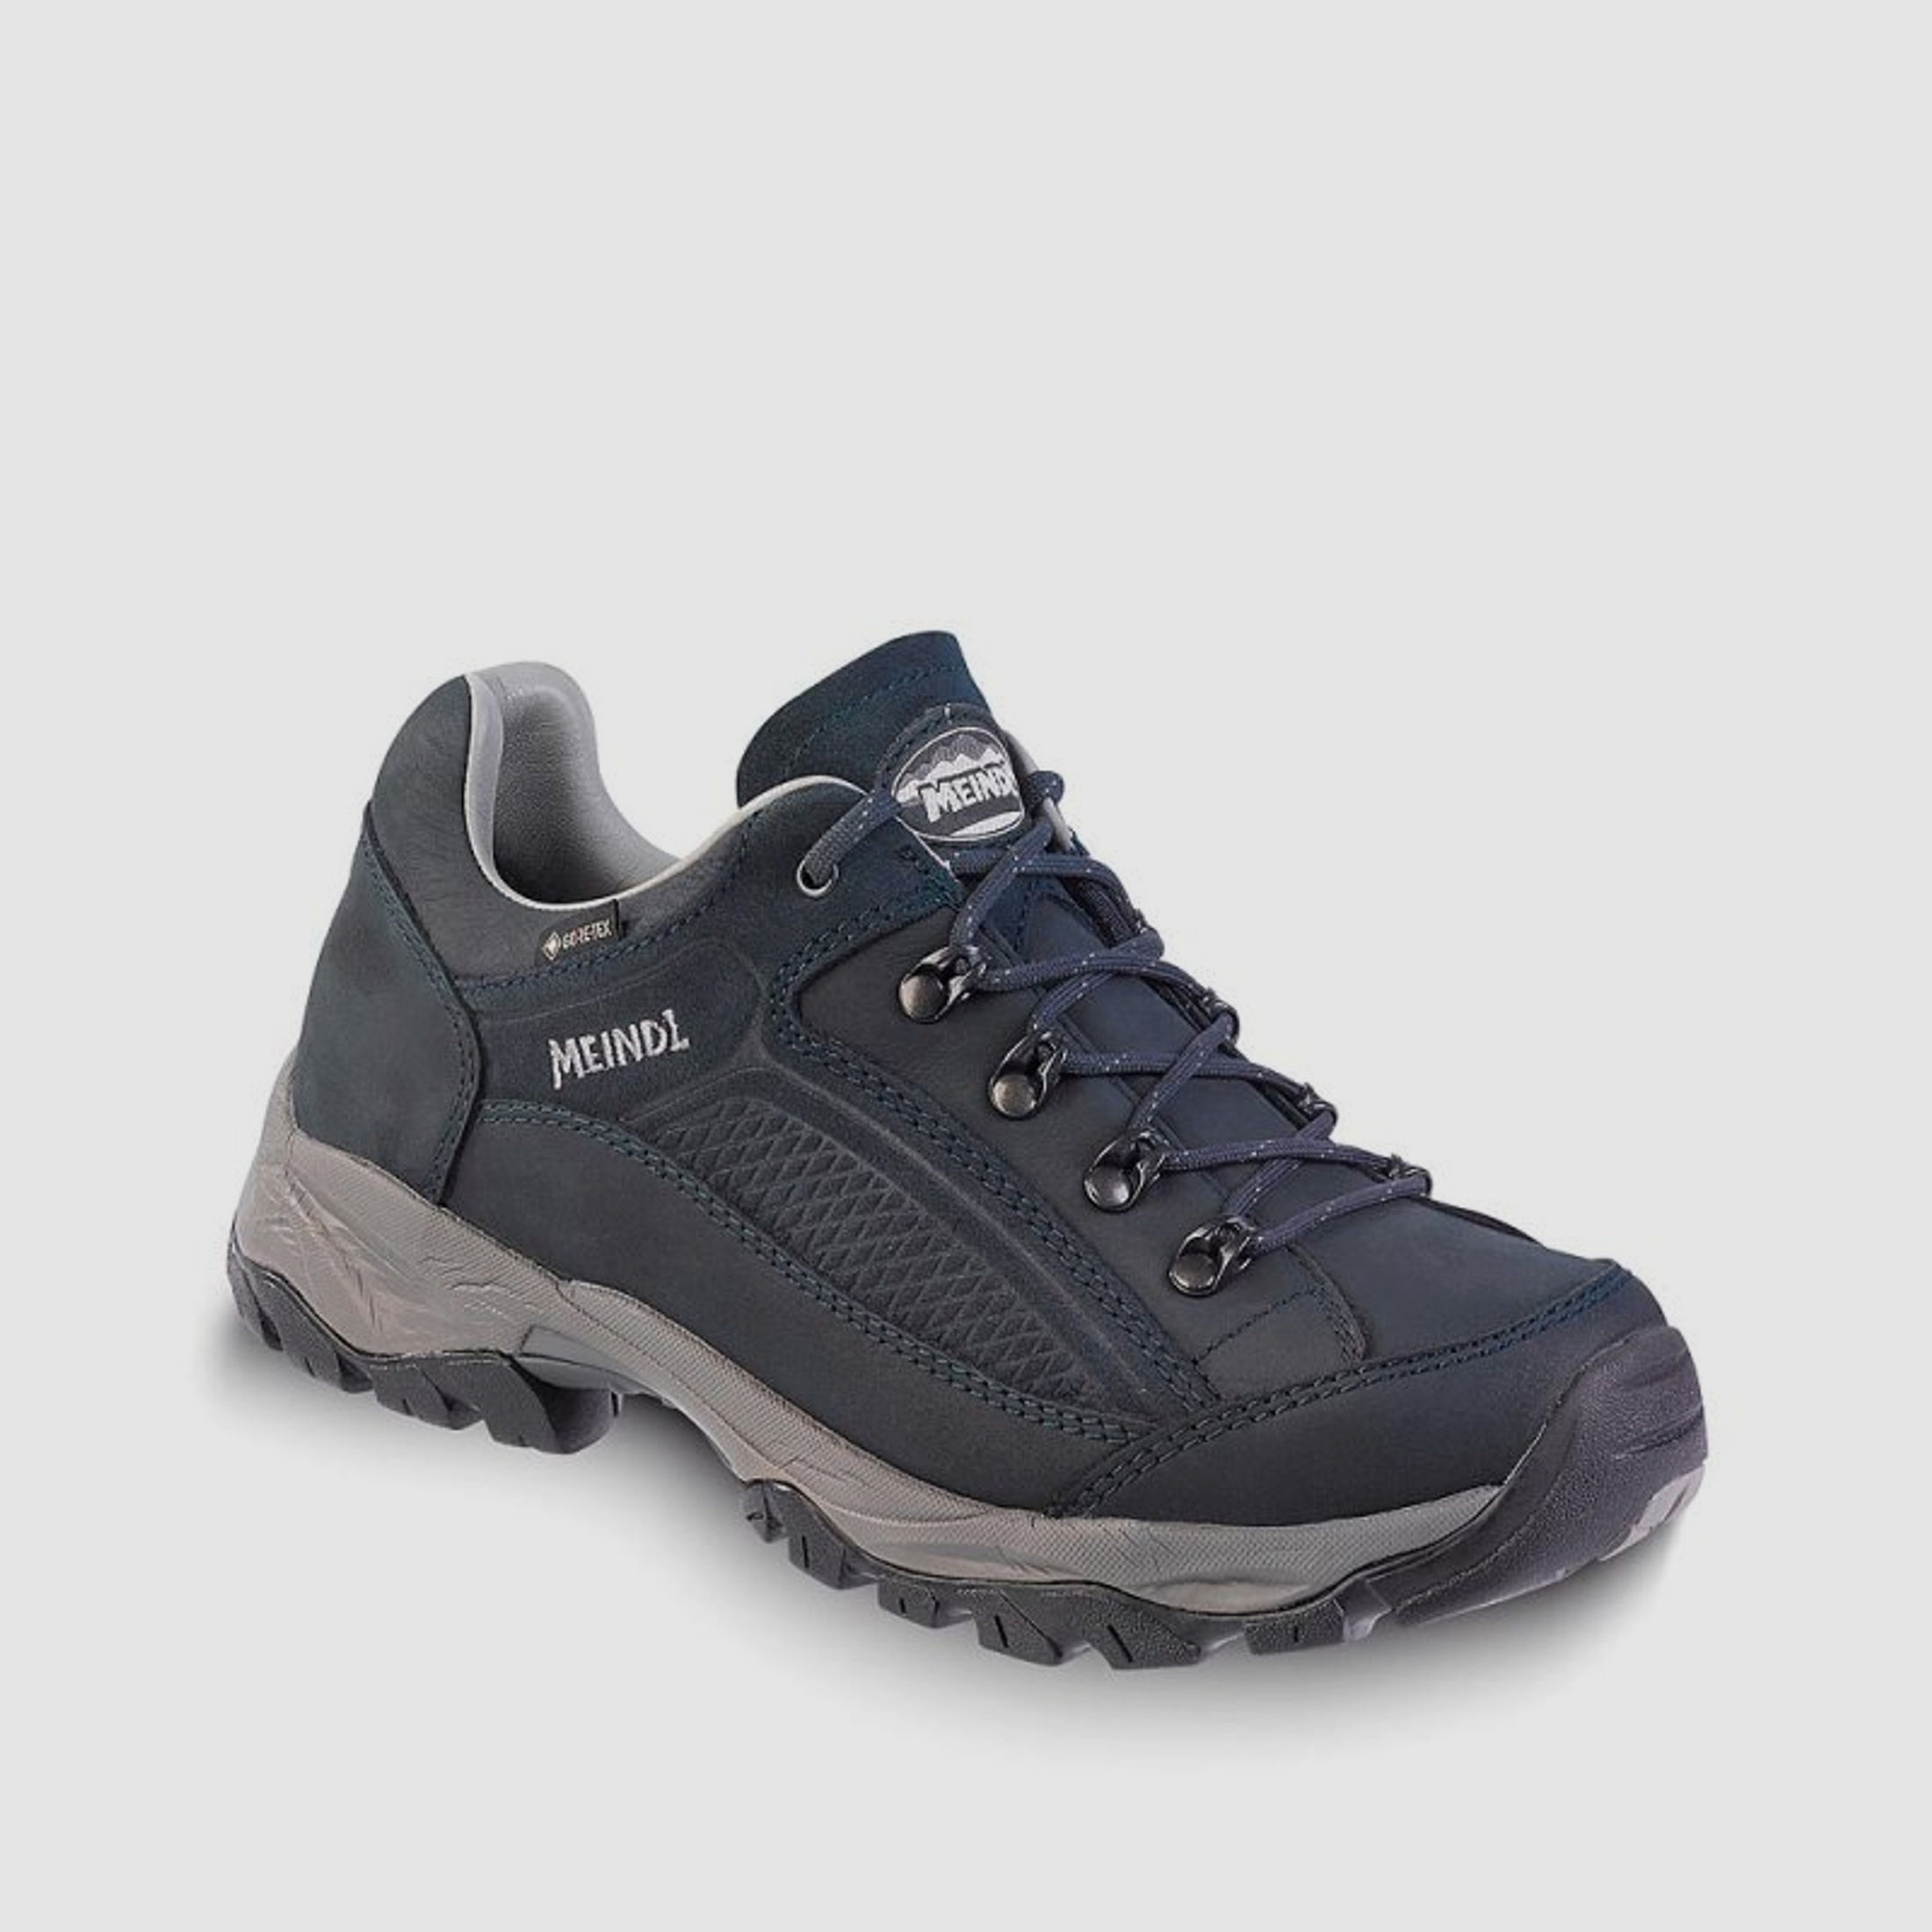 Meindl Damen Schuhe Atlanta GTX Nachtblau 4,5 UK - 37,5 EU